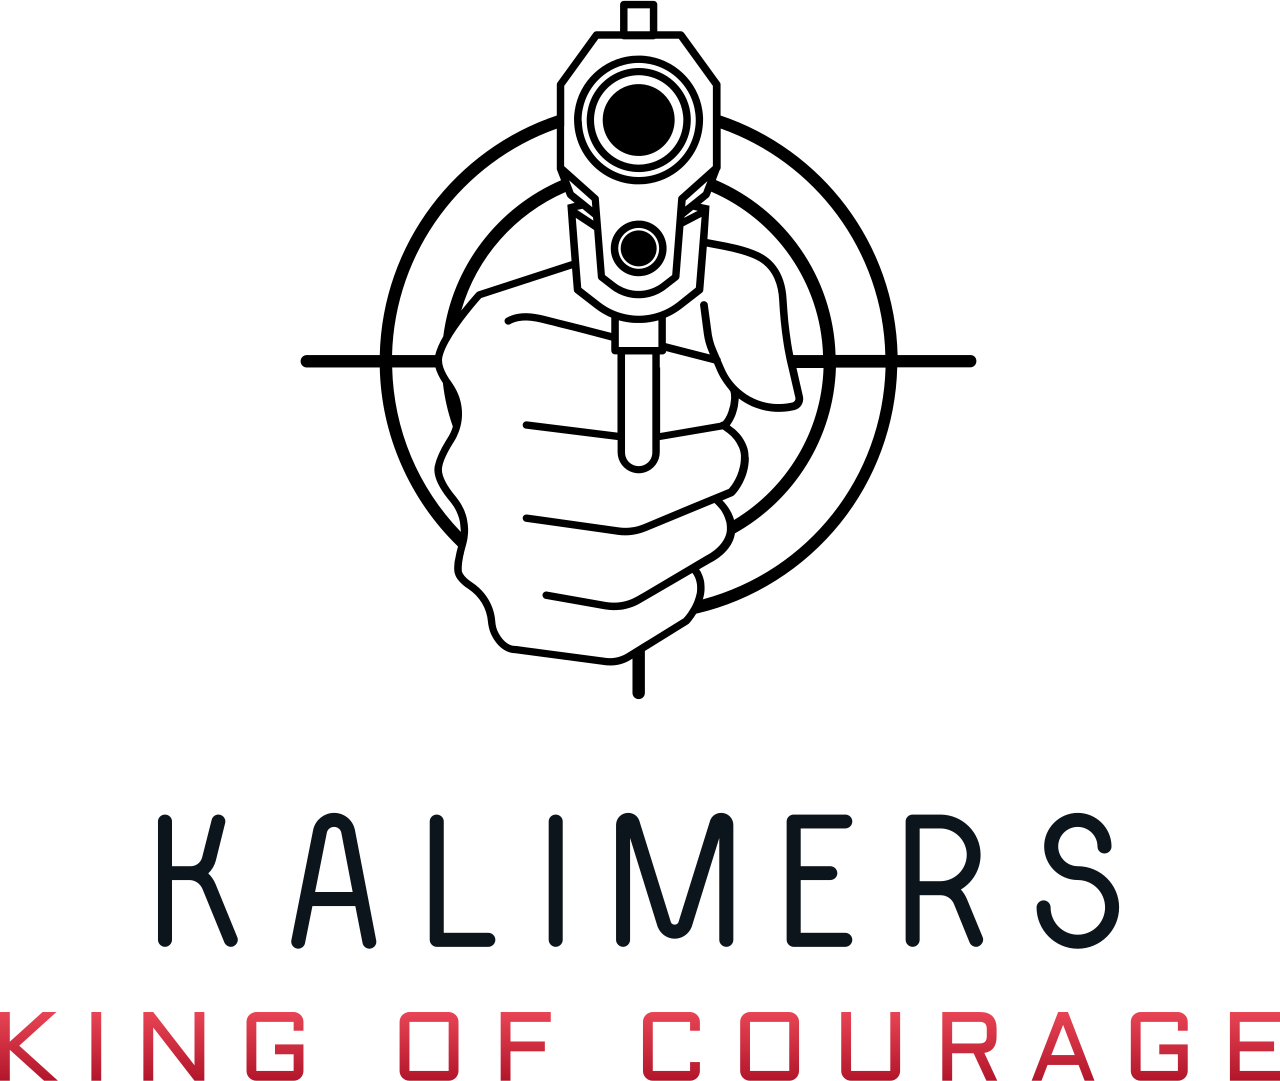 KALIMERS's logo